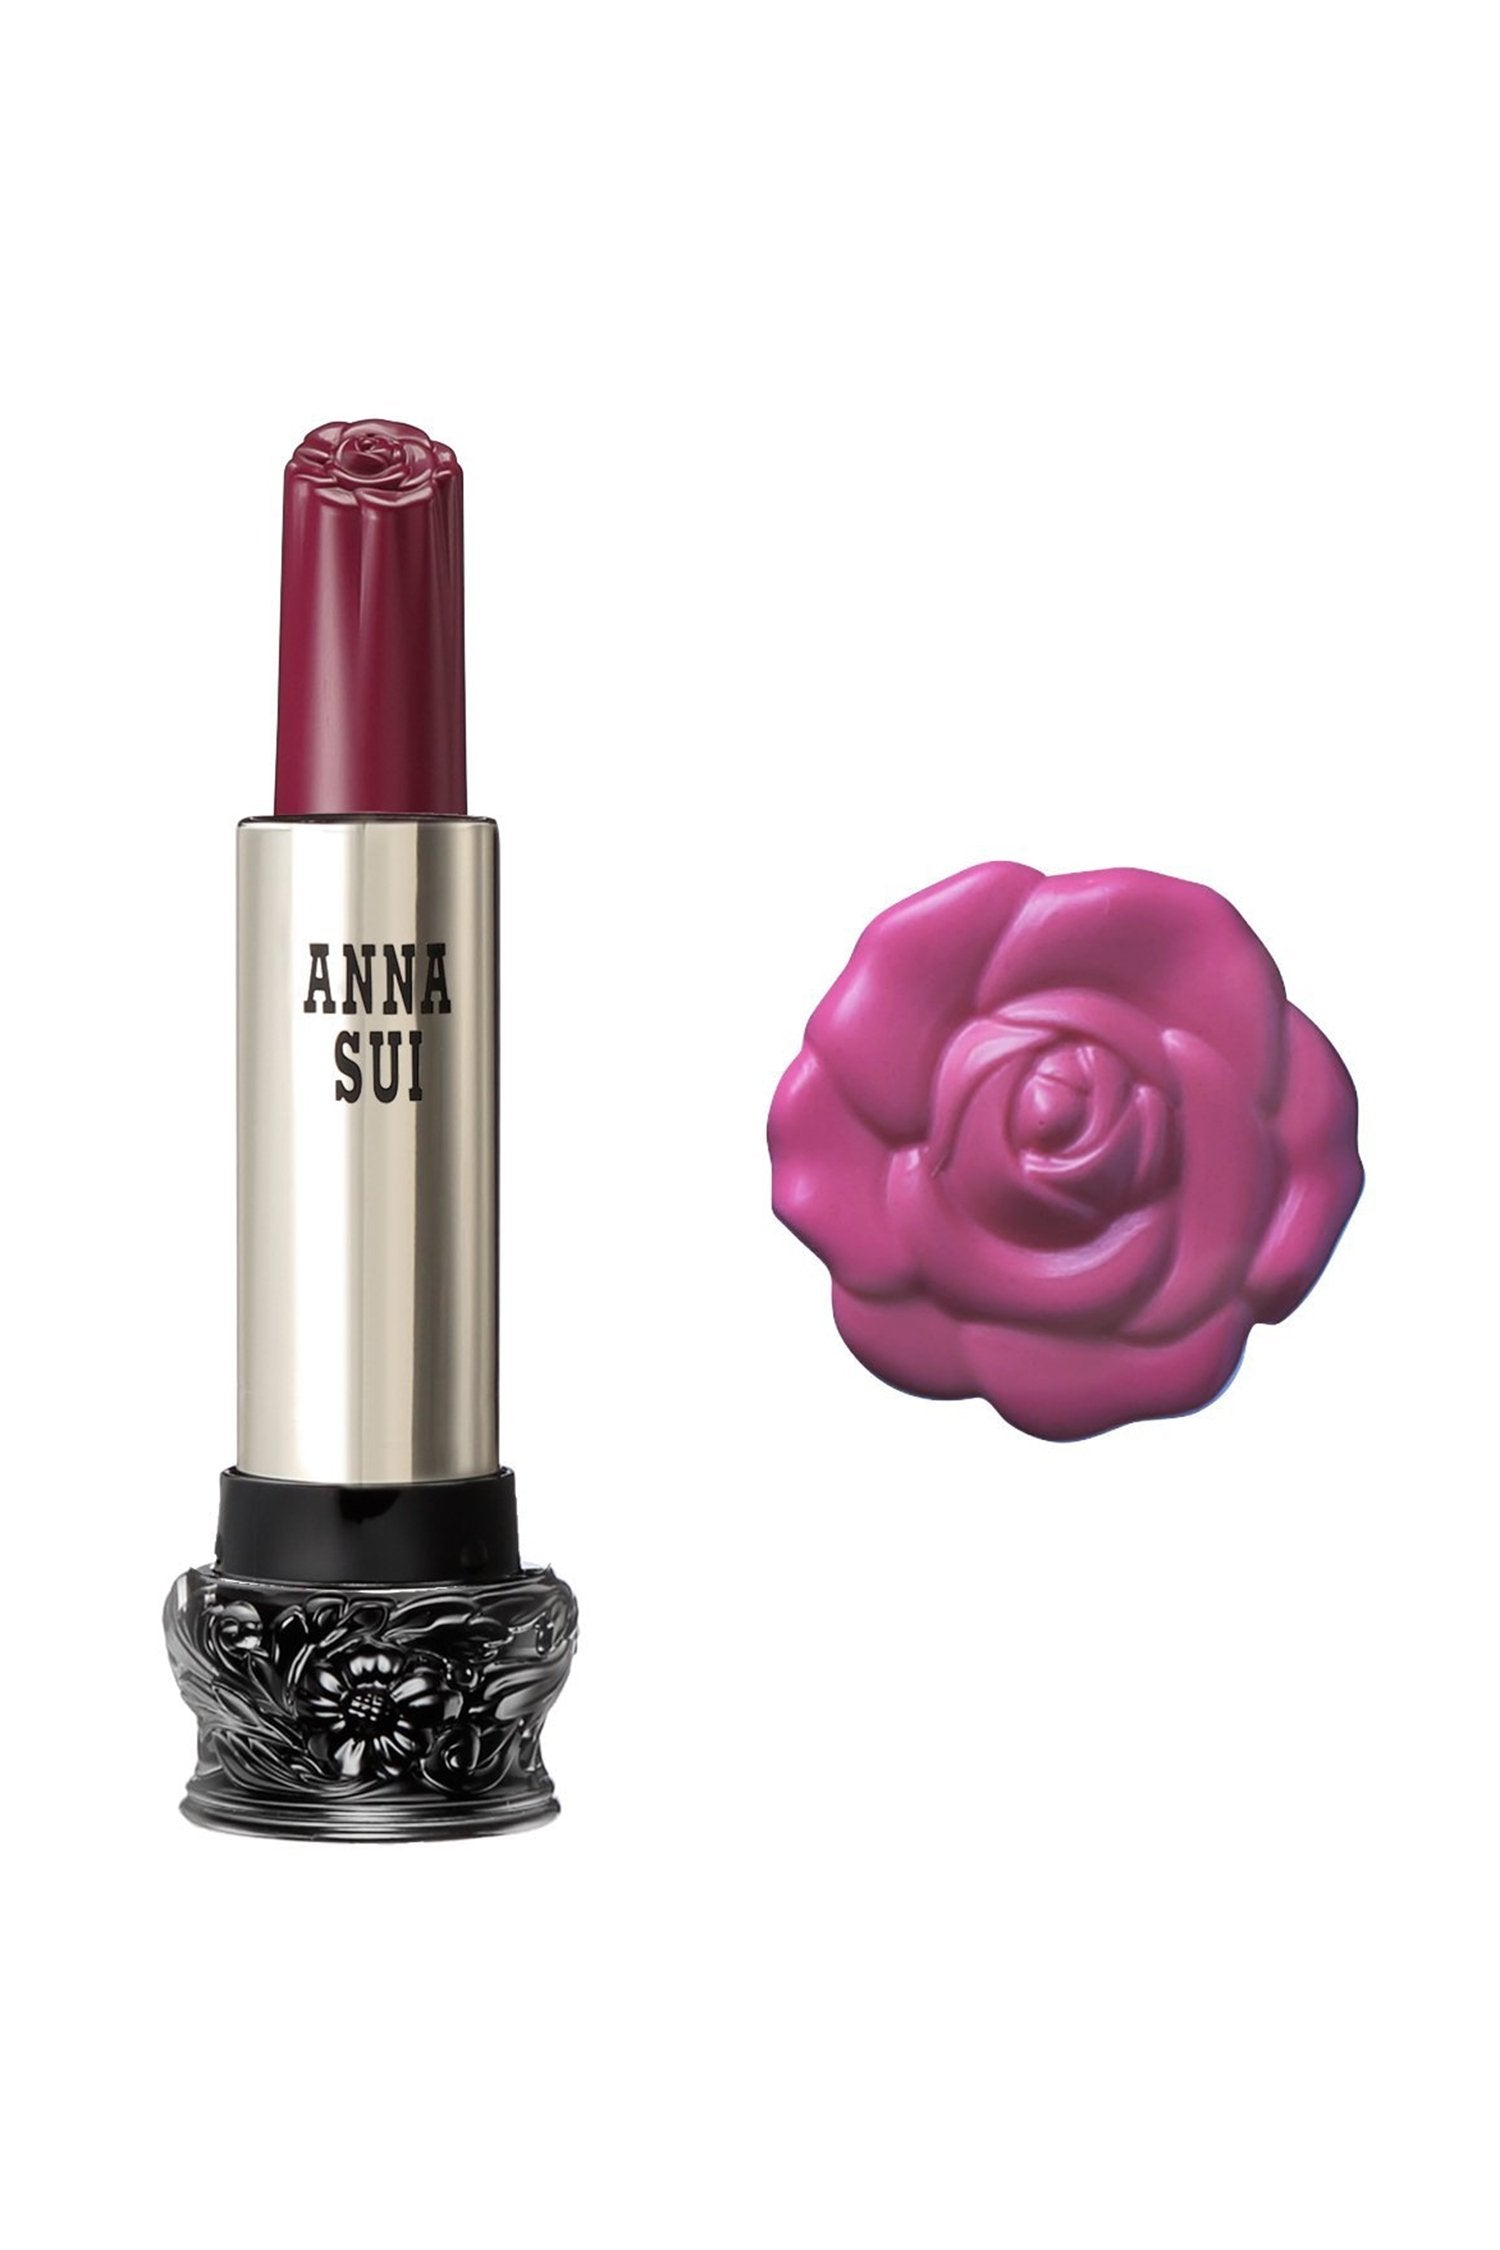 201 - 梅粉蘭花唇膏 F： 仙女花， 在一個圓柱形容器， 大黑色底座， 雕刻花卉設計， 金屬身體